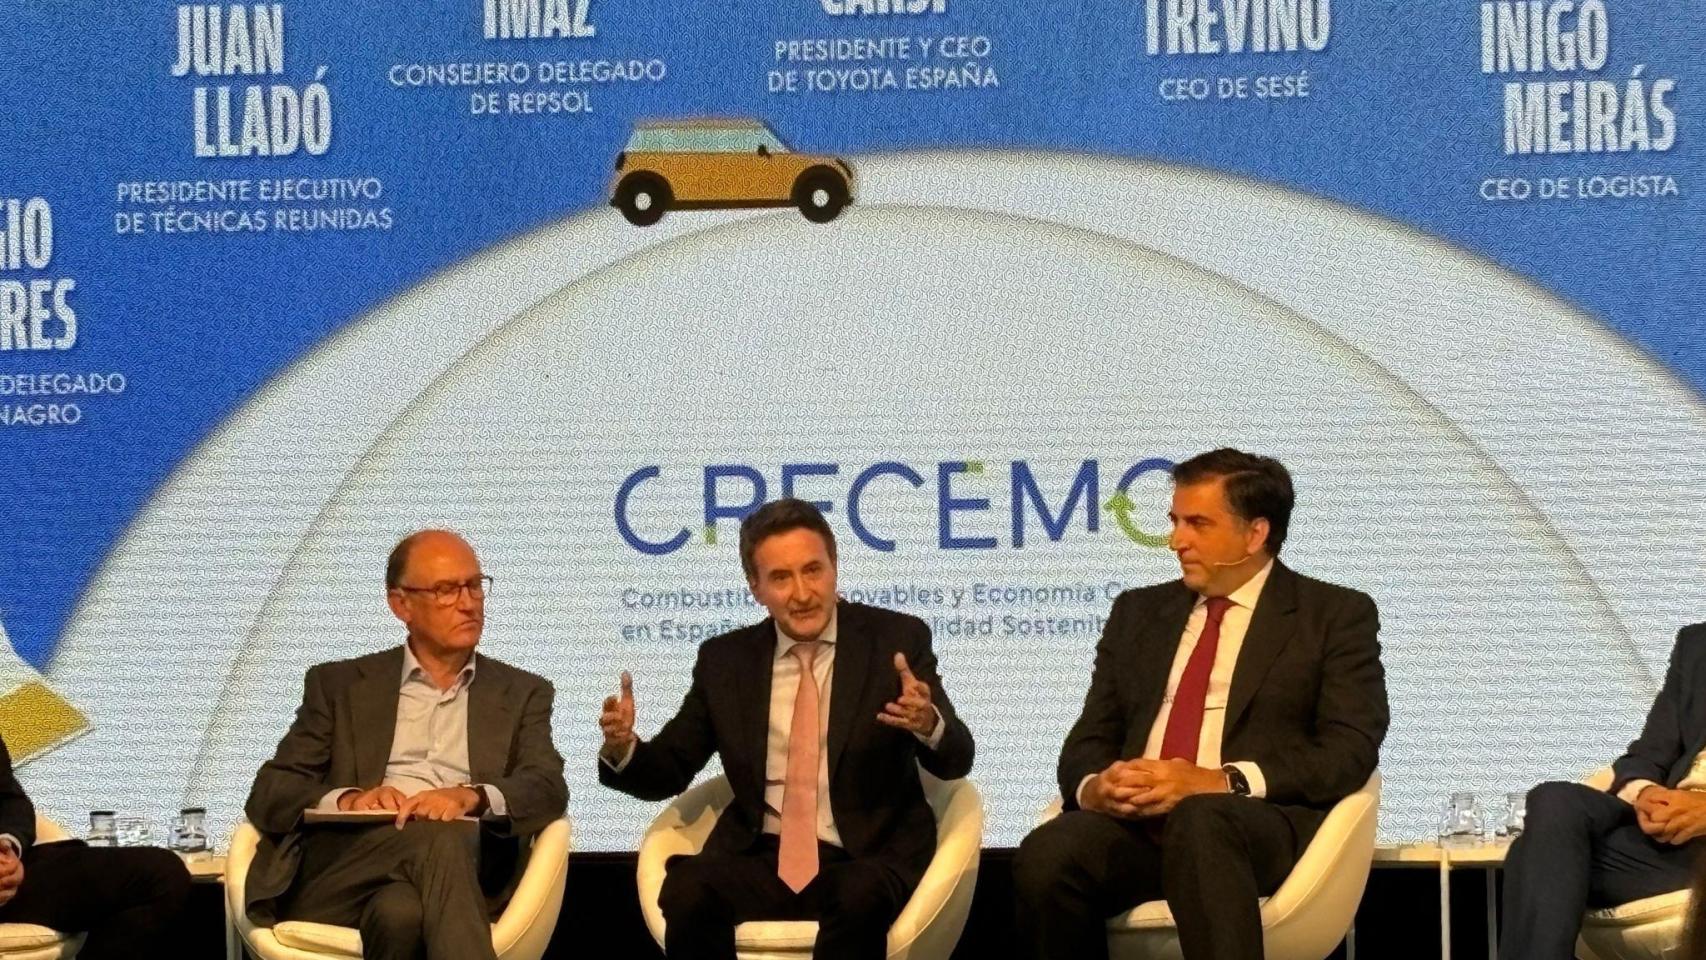 Josu Jon Imaz, CEO de Repsol, en la presentación de la Asociación de Combustibles Renovables y Economía Circular para una Movilidad Sostenible (Crecemos).